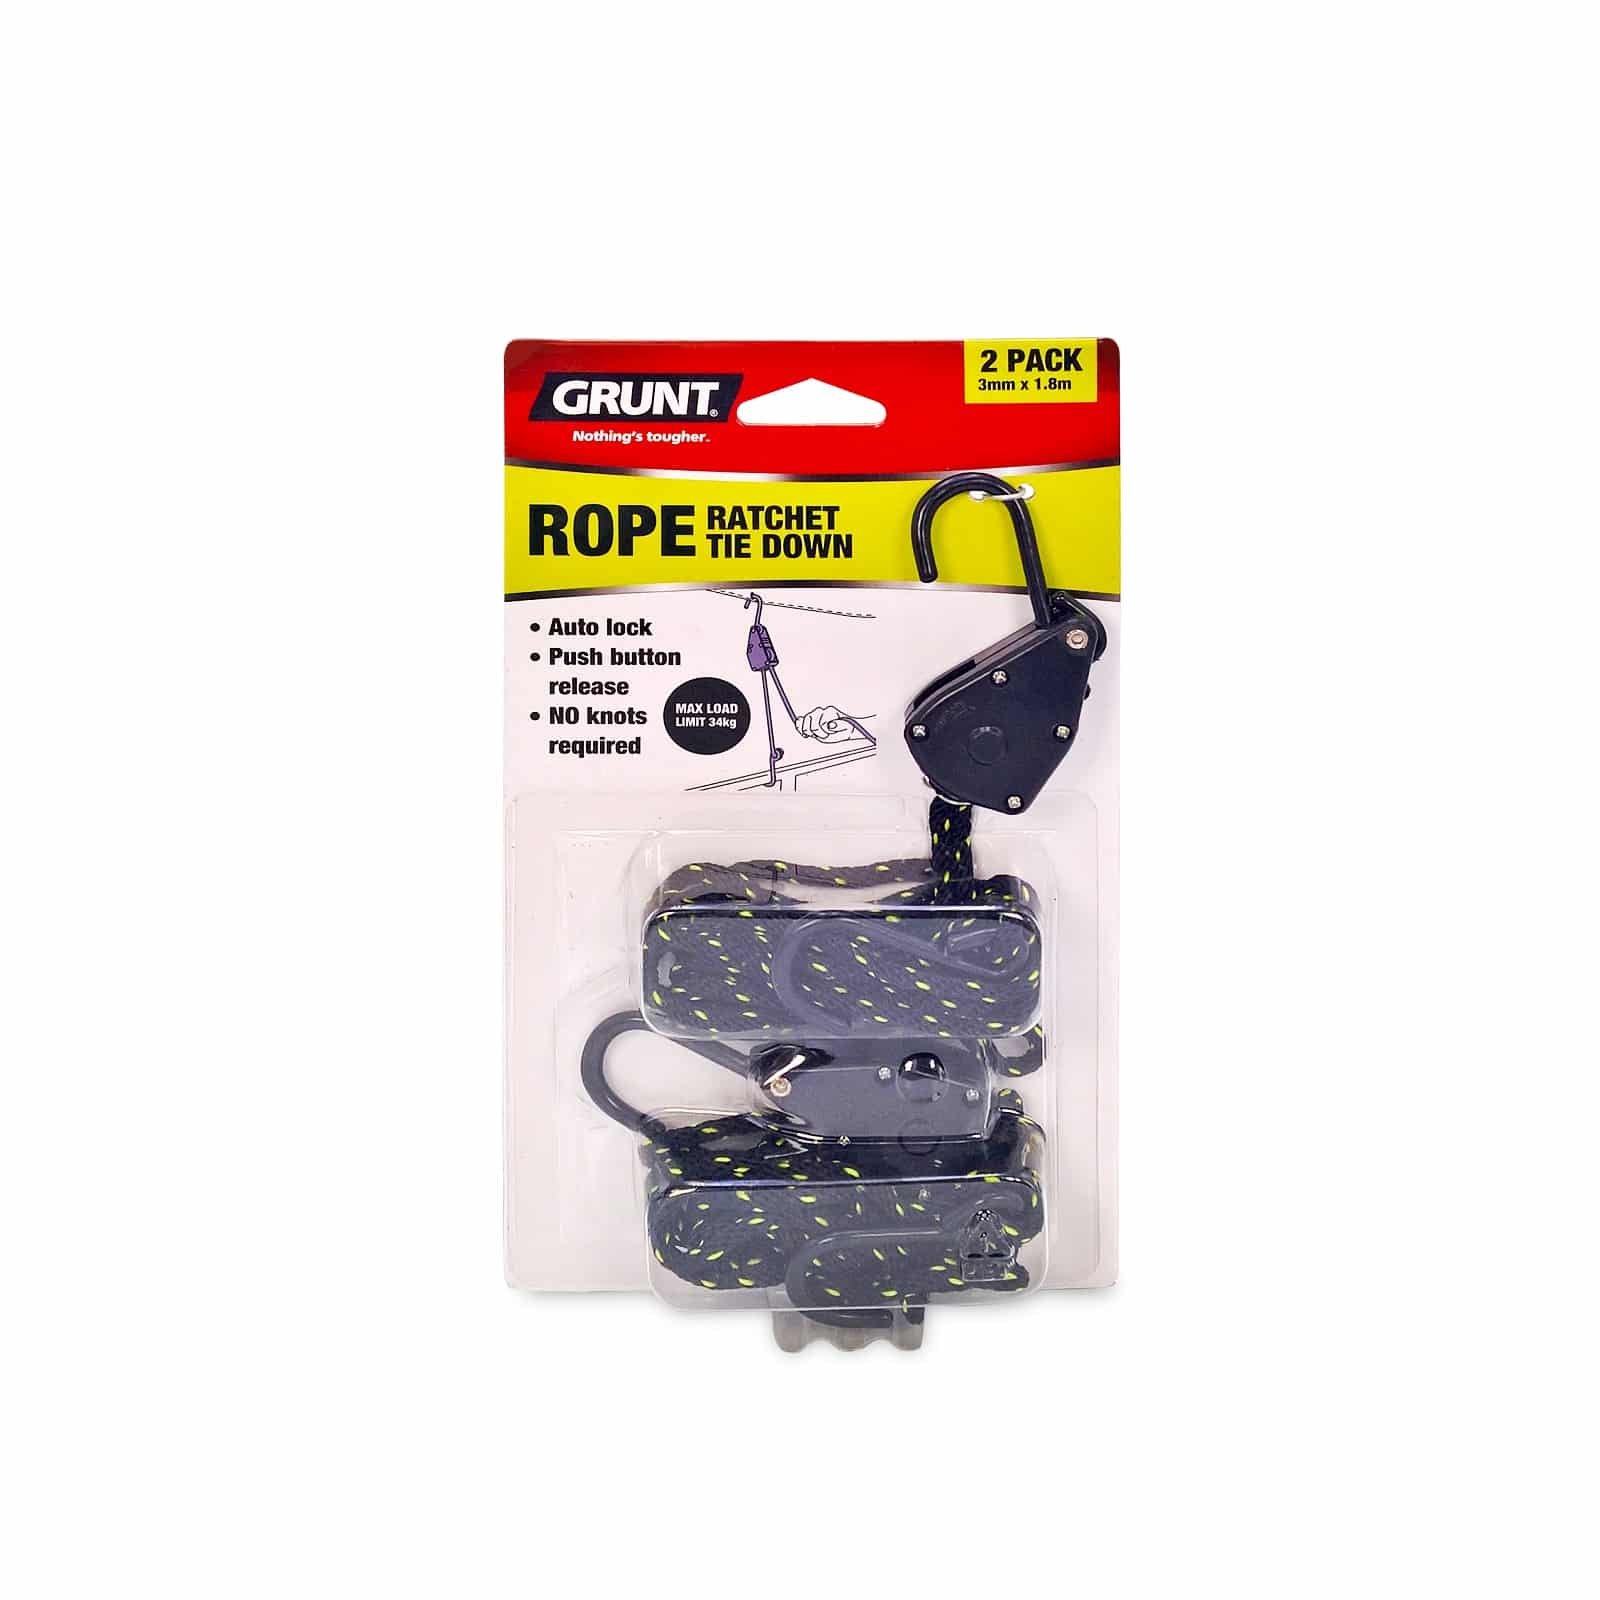 Rope-Ratchet-Tie-Down – GRUNT